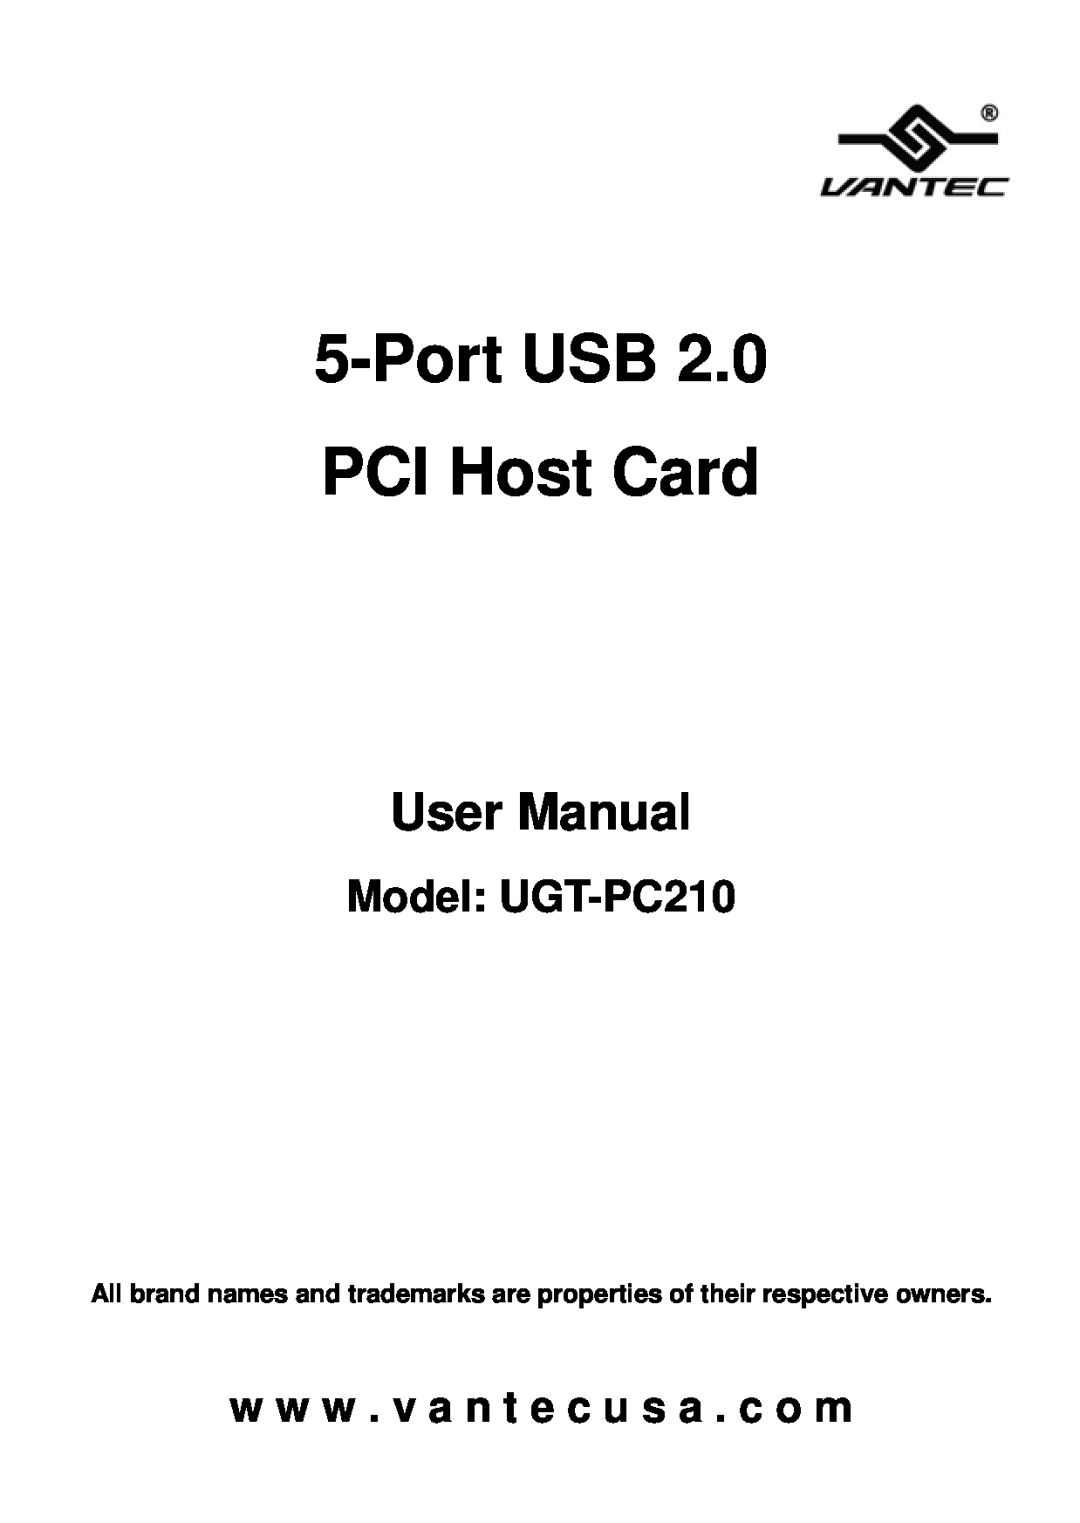 Vantec user manual Port USB PCI Host Card, User Manual, Model UGT-PC210, w w w . v a n t e c u s a . c o m 